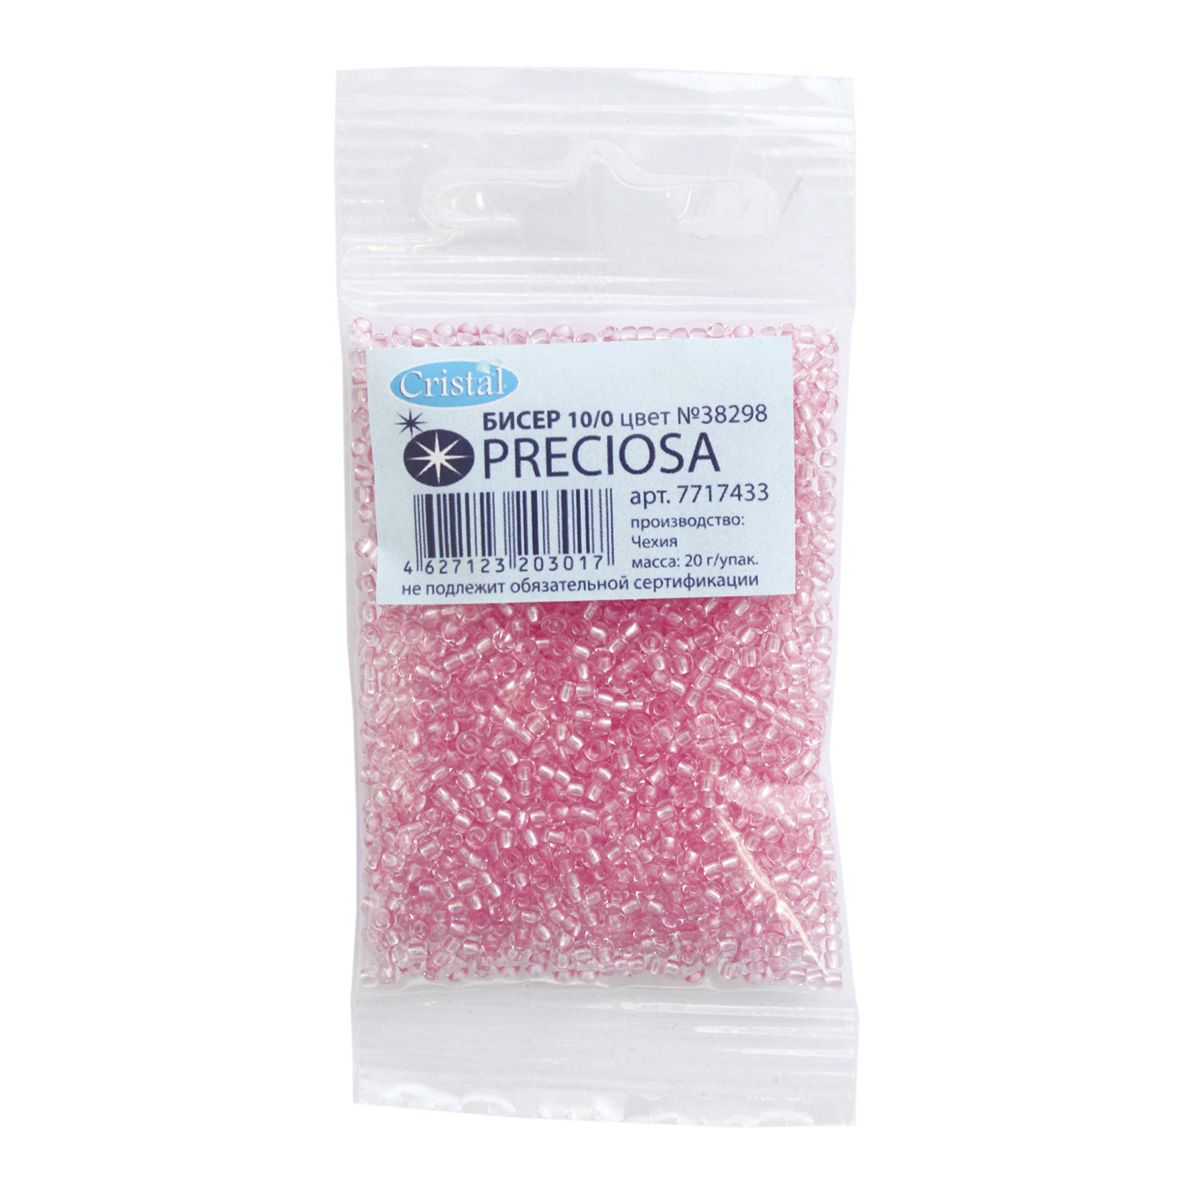 Бисер Preciosa чешский прозрачный с жемчужным центром 10/0 20 гр Прециоза 38298 розовый - фото 1